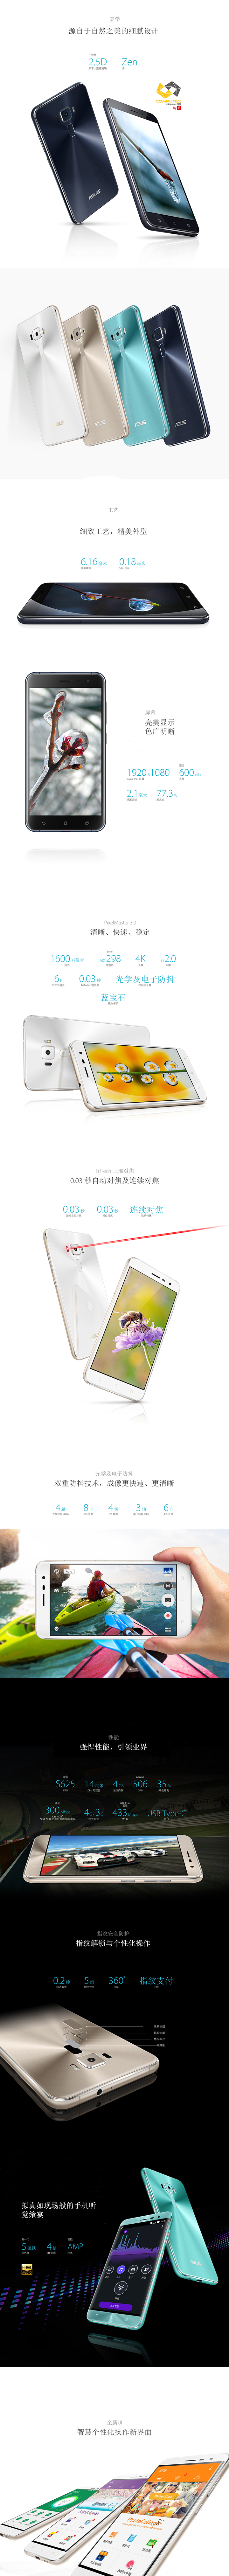 华硕ZenFone 3 灵智免费试用,评测